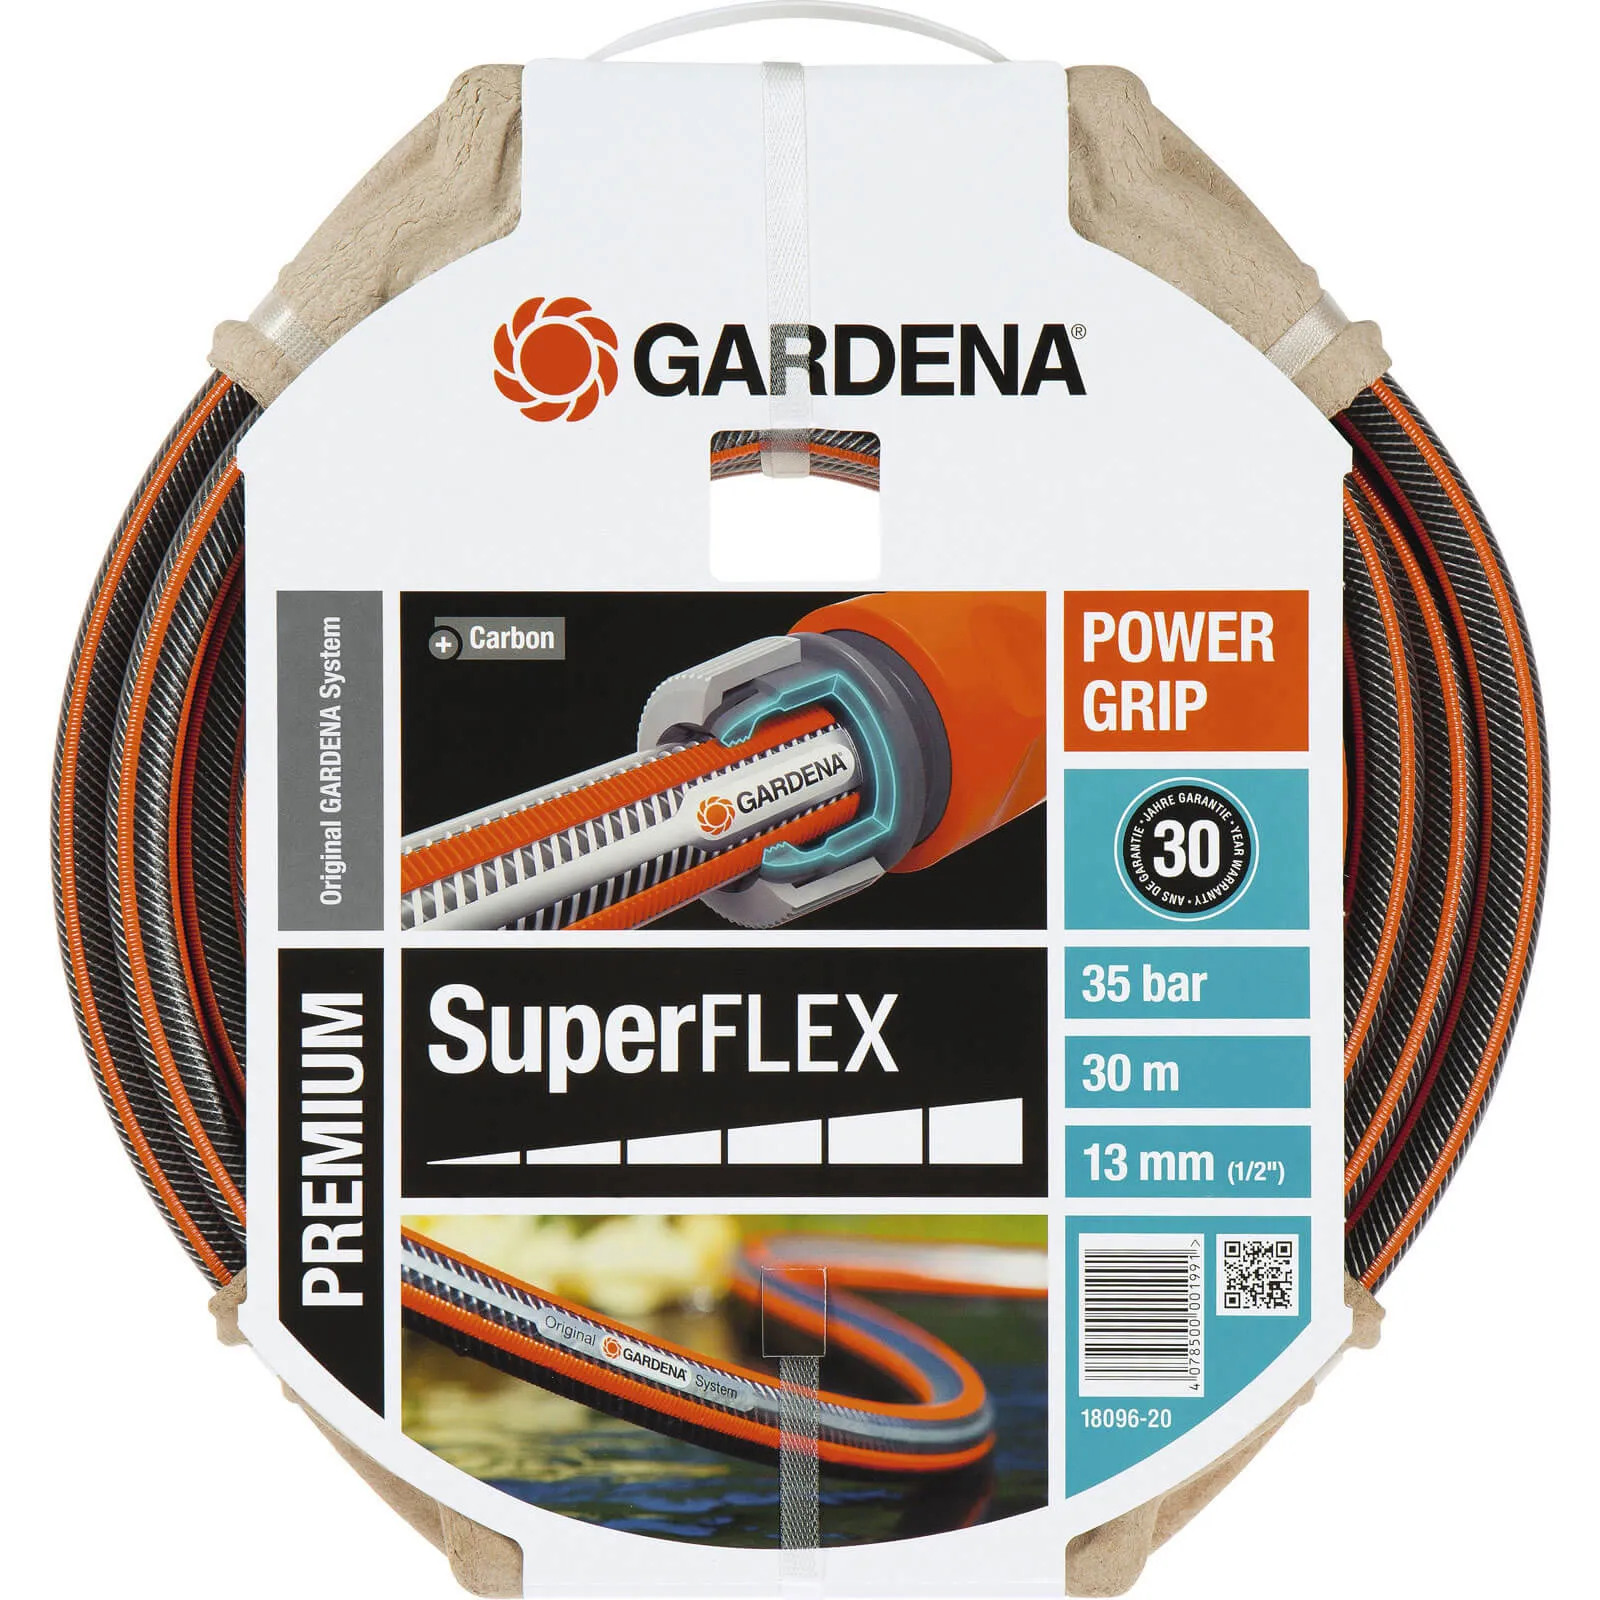 Gardena SuperFlex Premium Hose Pipe - 1/2" / 12.5mm, 30m, Black / Orange